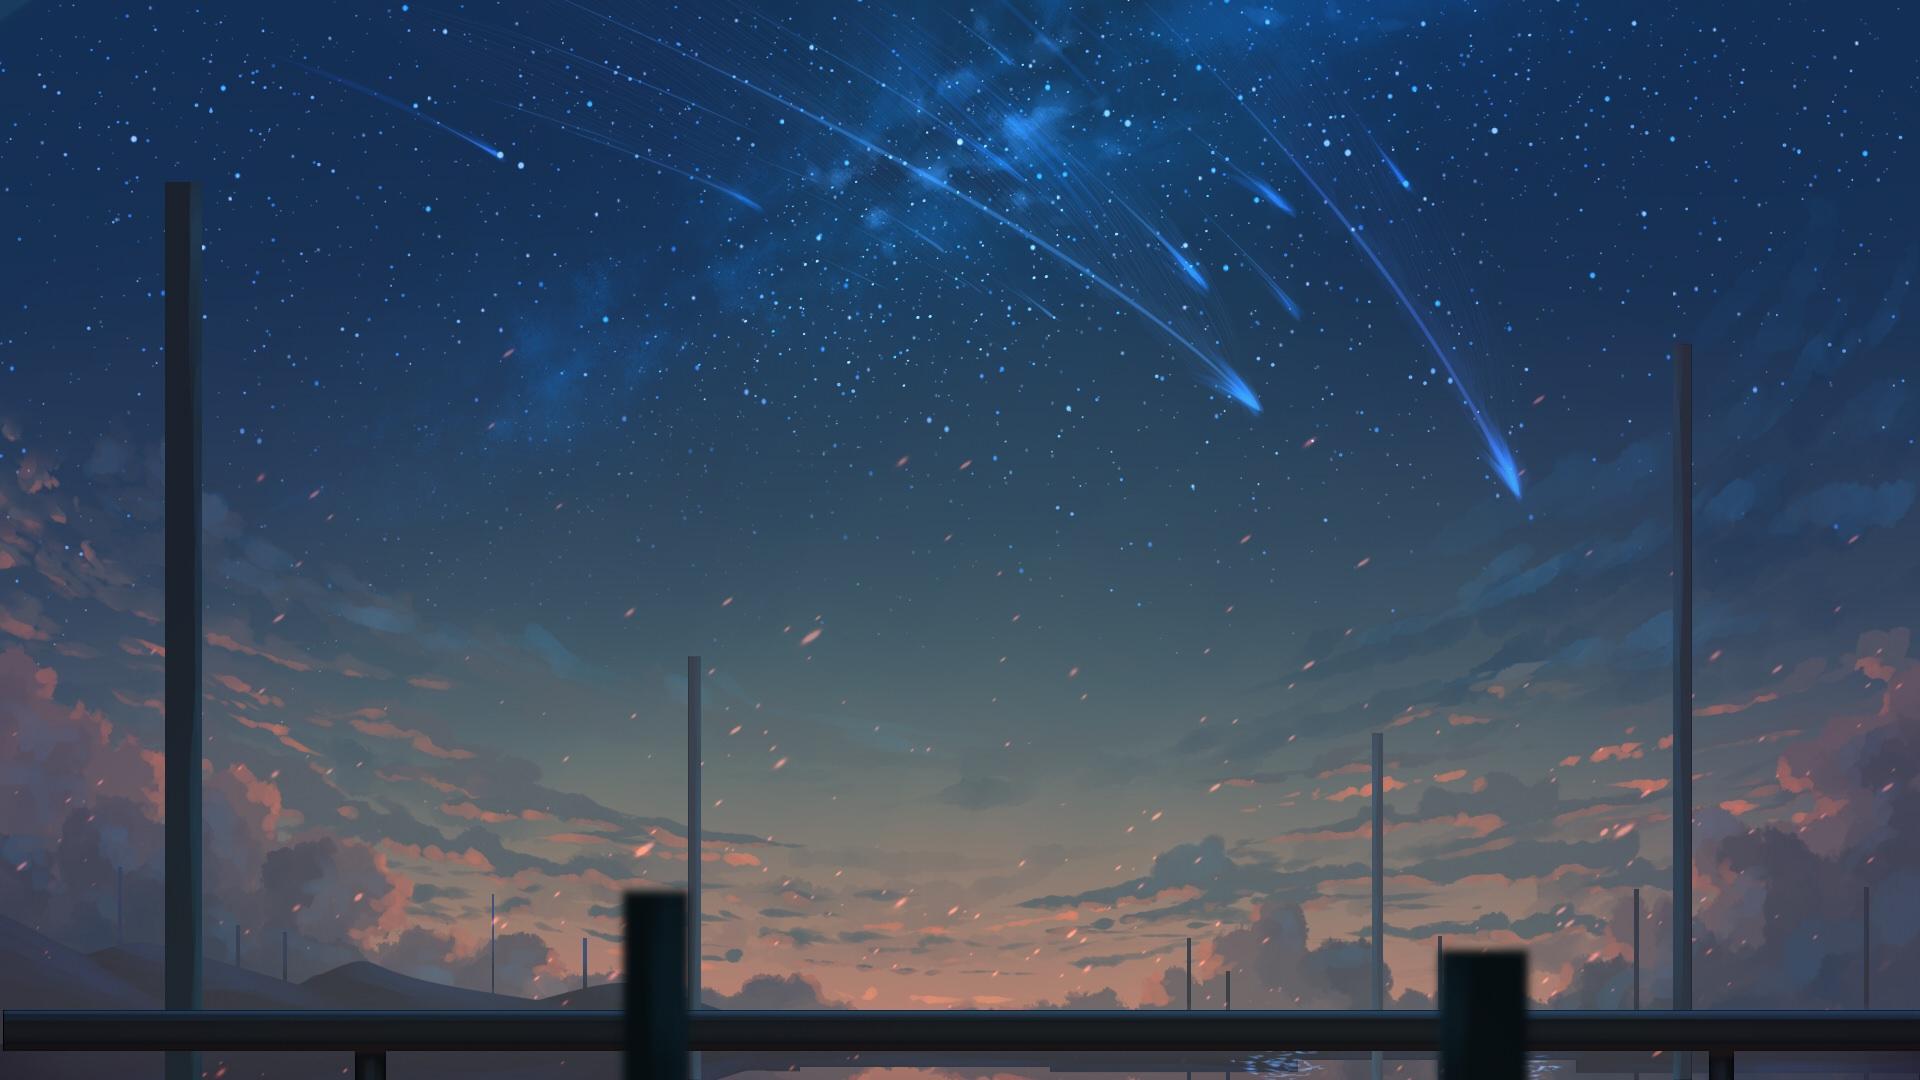 Shooting Stars [1920×1080]